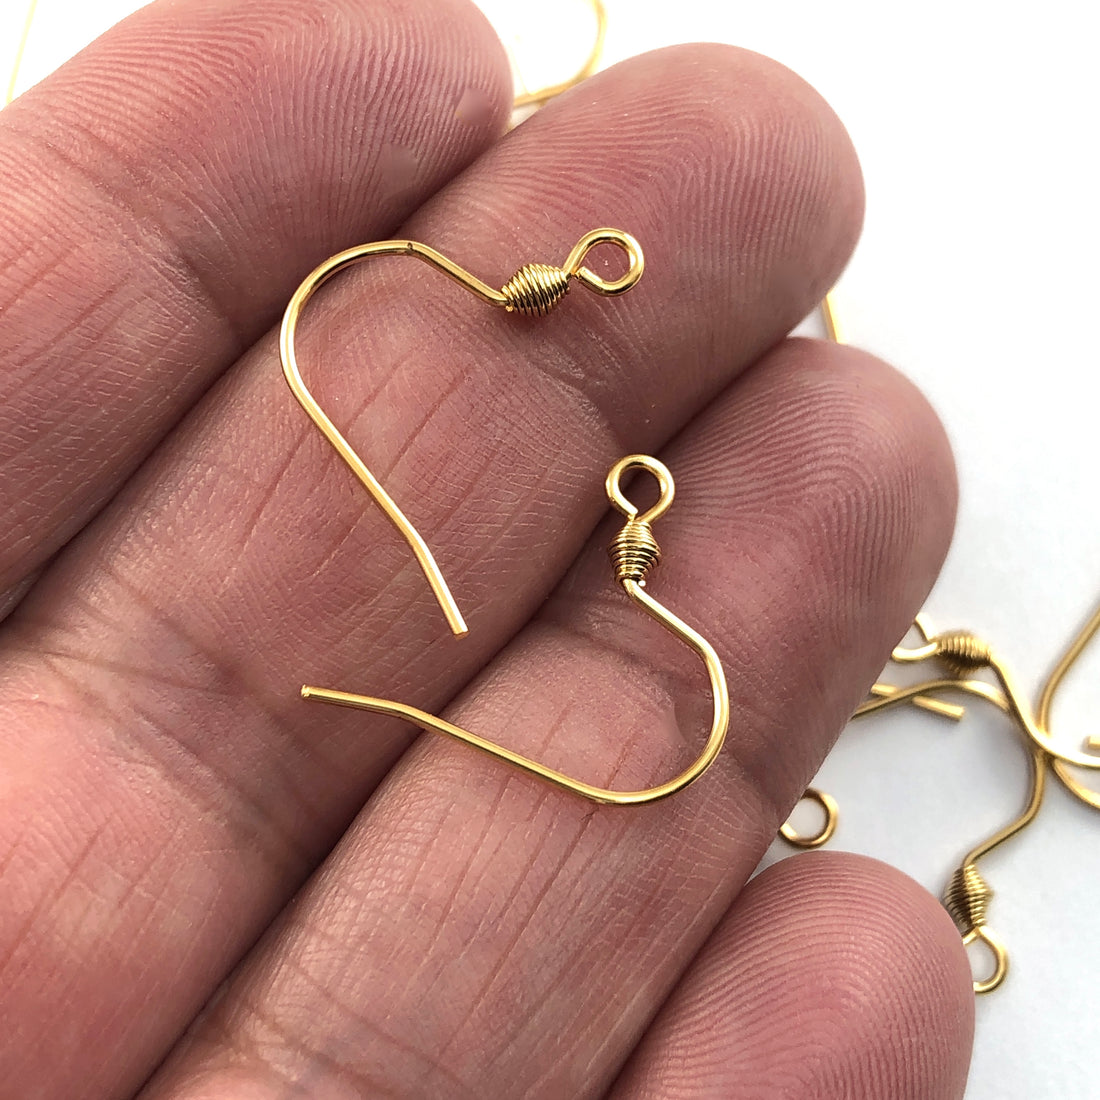 Stainless Steel Earring Hooks, Gold Colour 18mm - 20 Pack – Easy